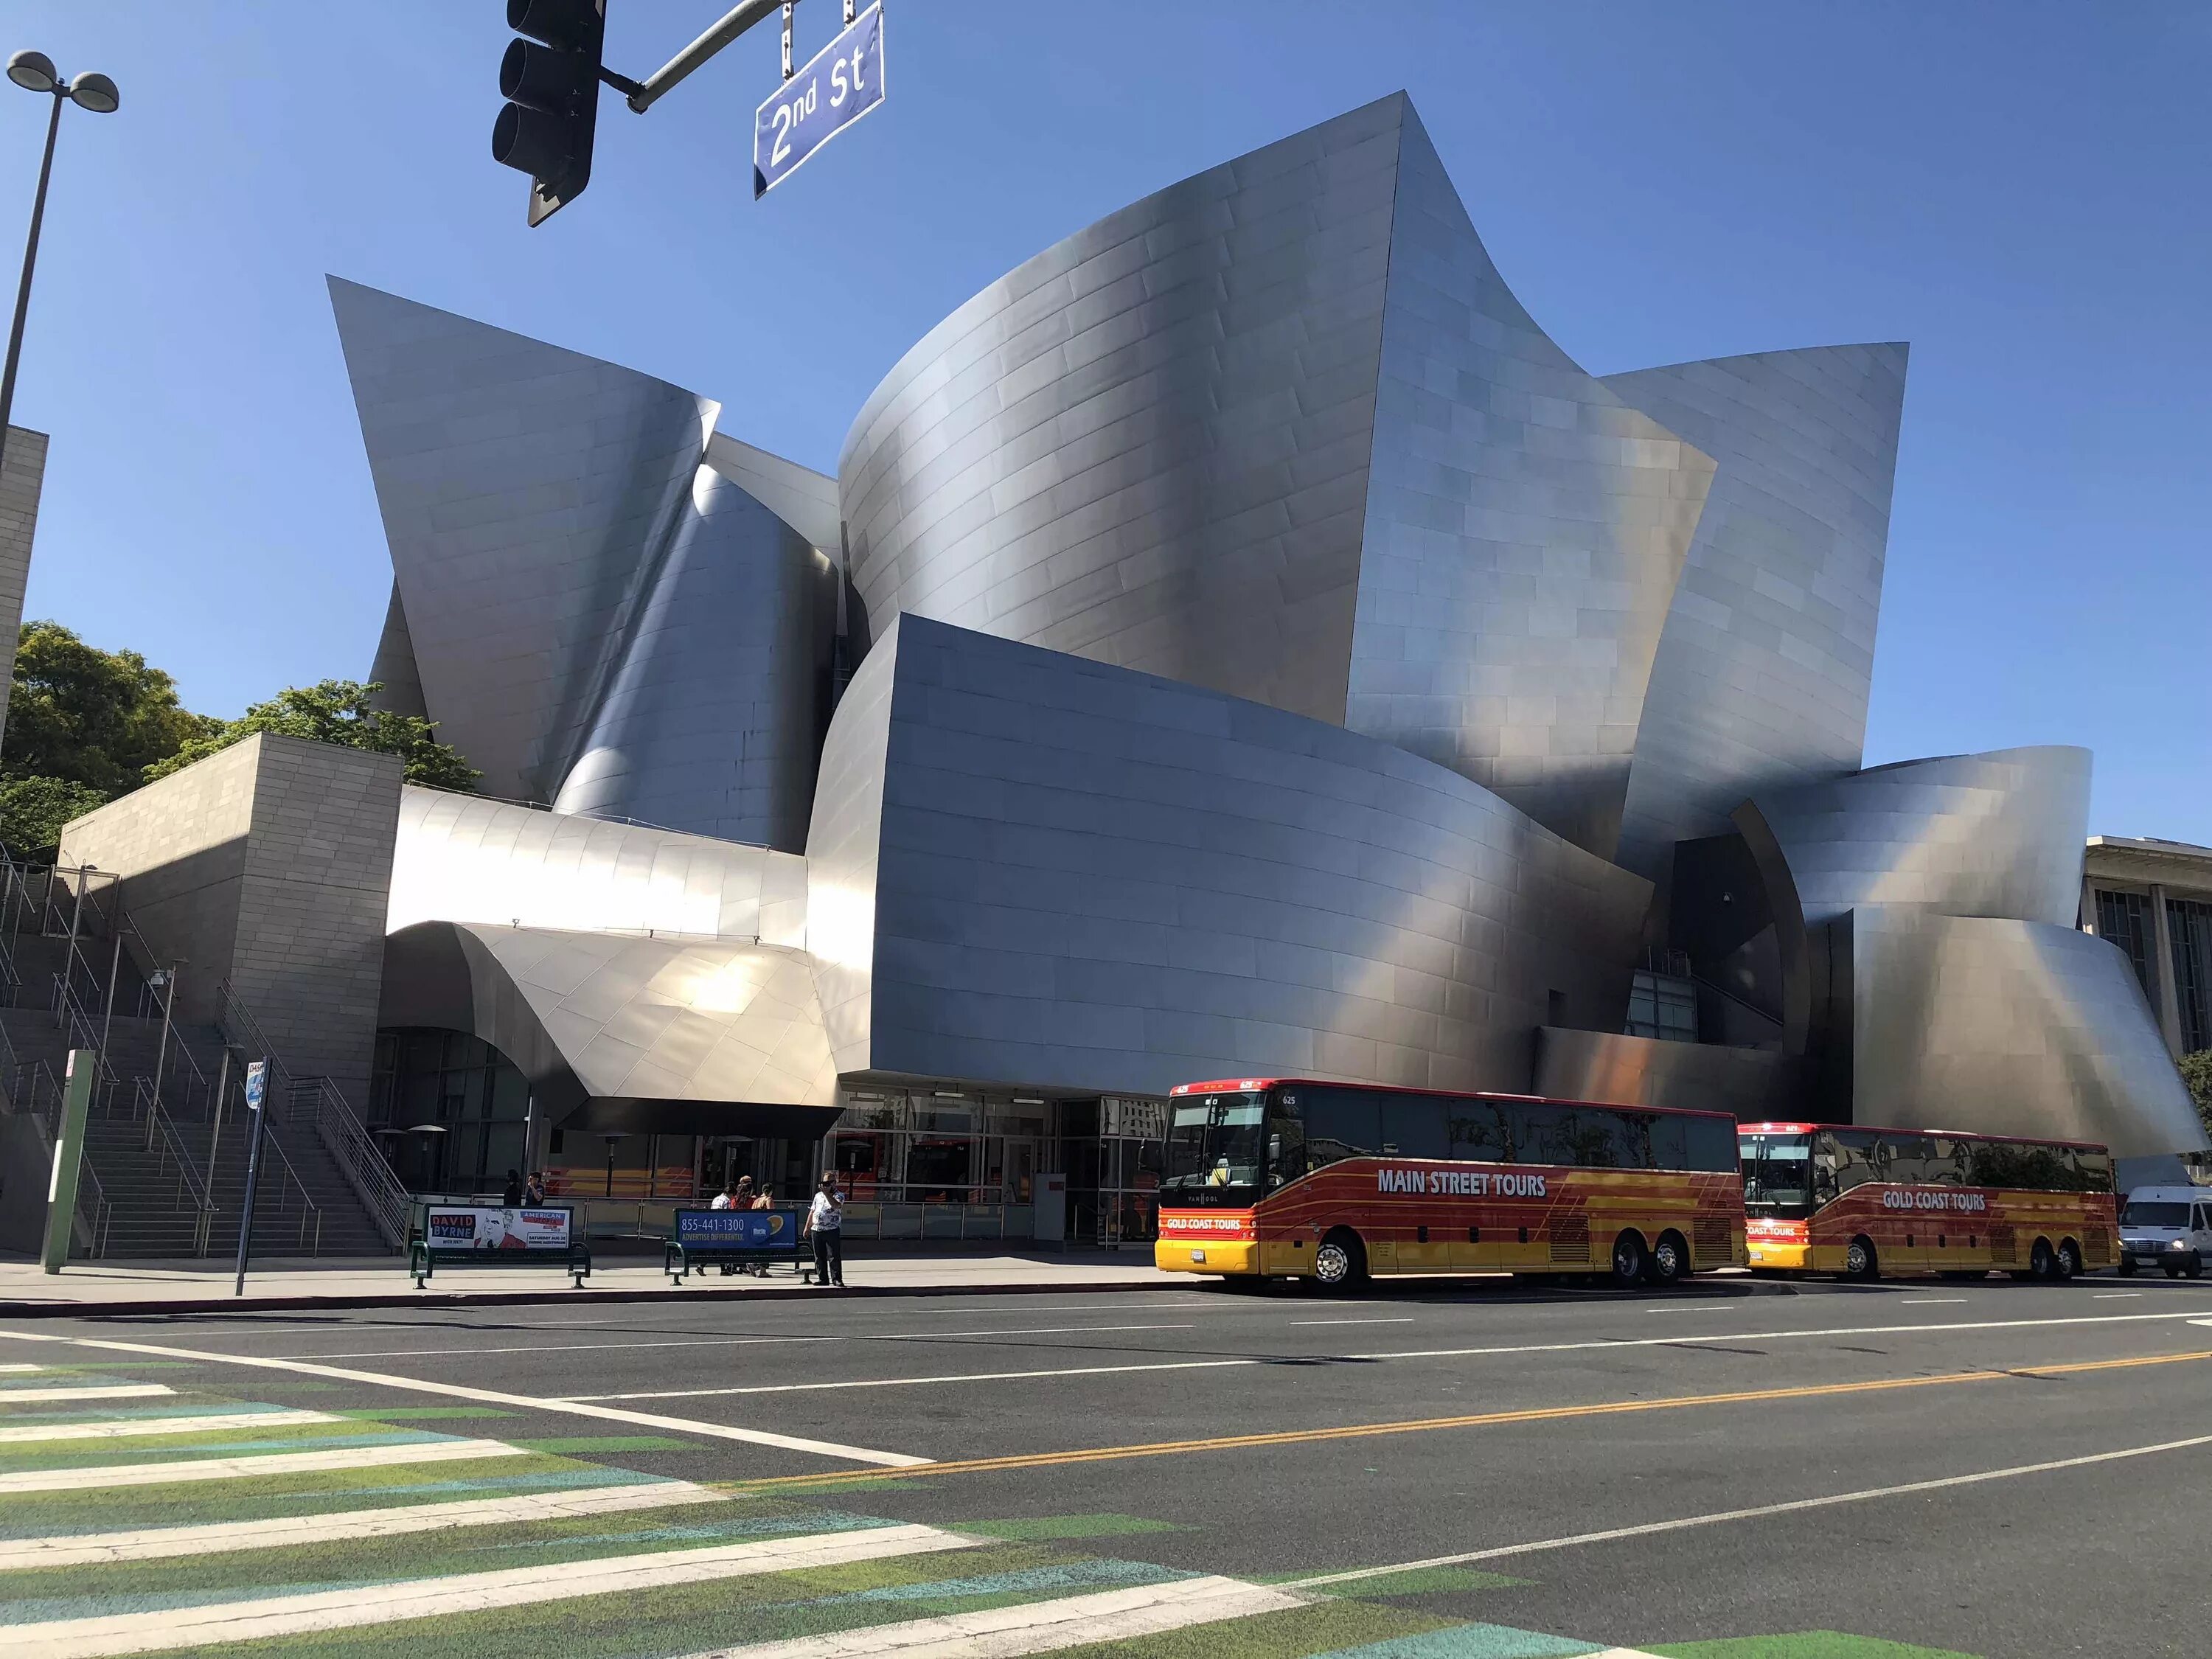 Концертный зал «Дисней» в Лос-Анджелес. Концертный зал Уолта Диснея в Лос-Анджелесе. Фрэнк Гери концертный зал Уолта Диснея. Концертный зал Уолта Диснея в Лос-Анджелесе архитектура. Концертный зал диснея